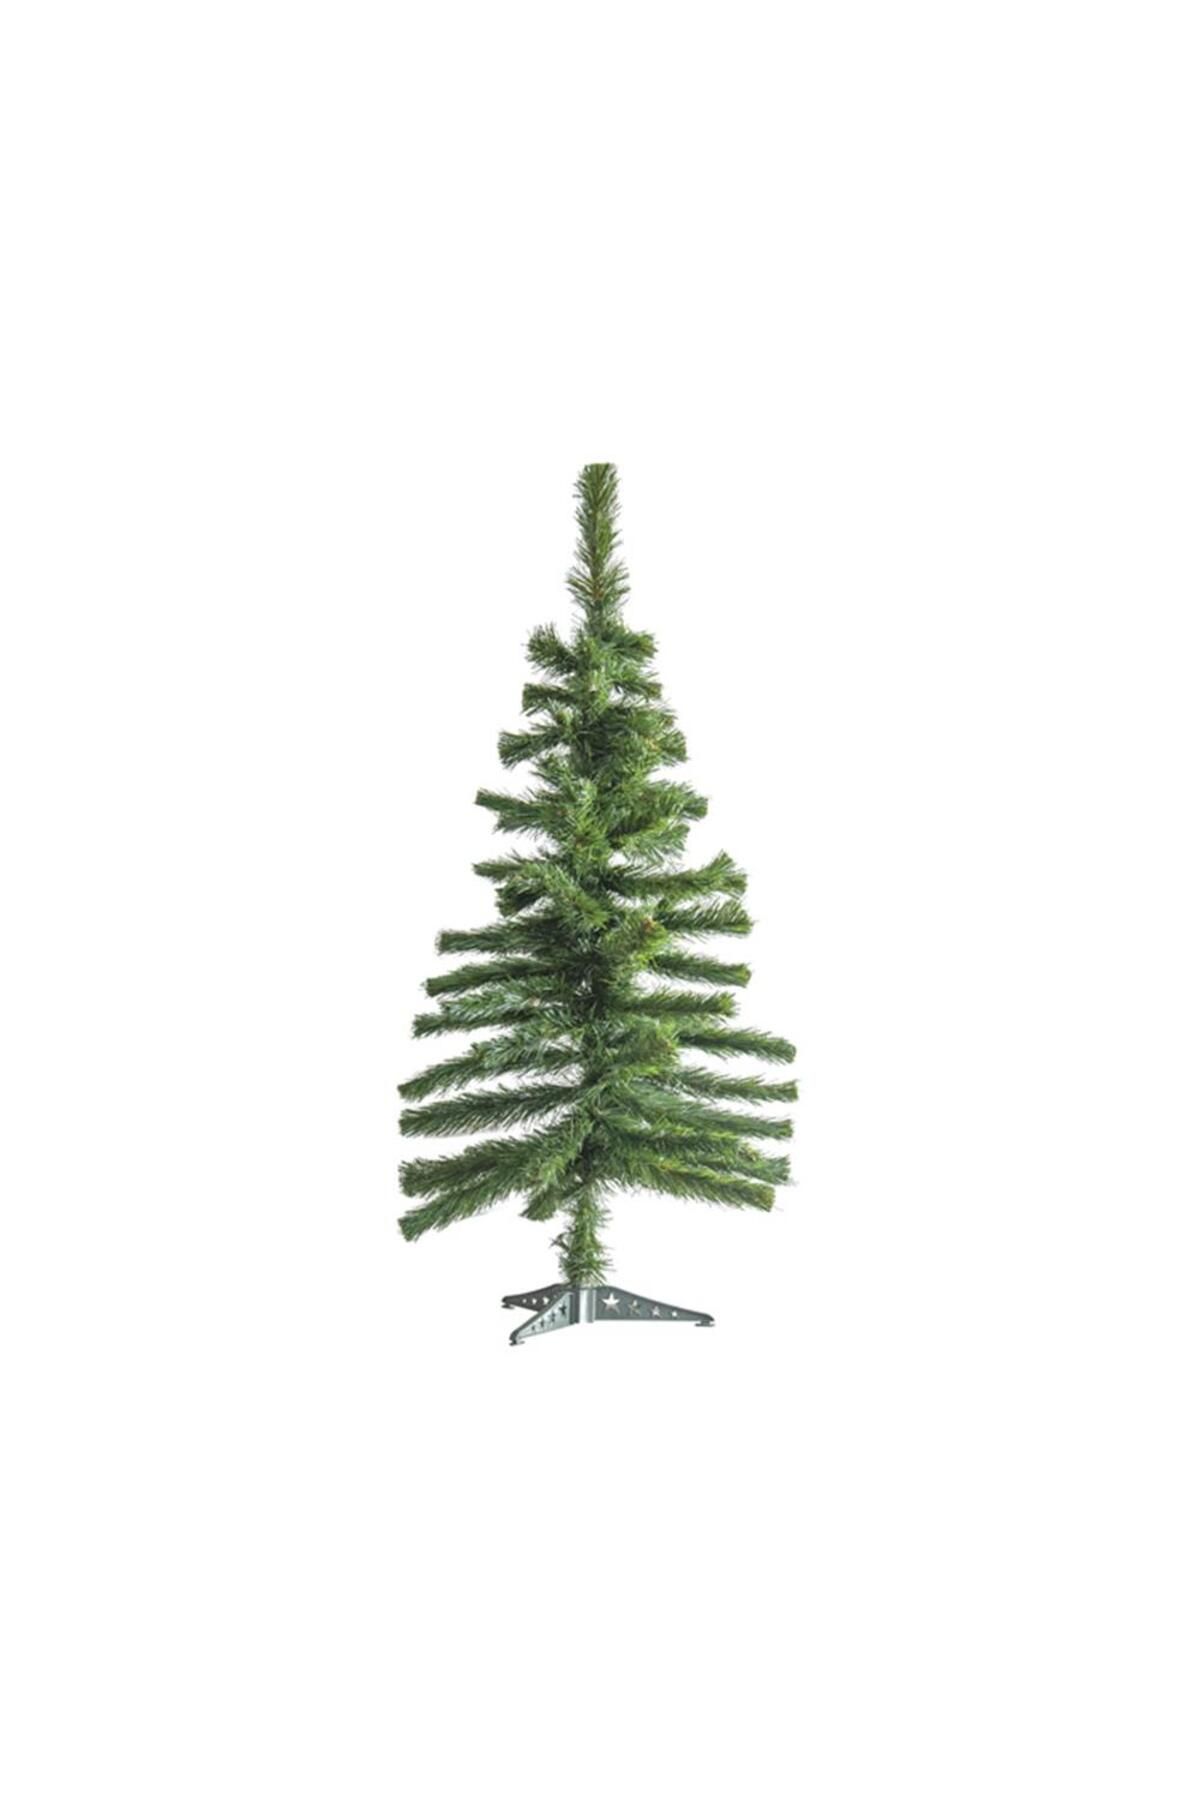 Mashotrend 60 cm 56 Dal Çam Ağacı - Noel Çam Ağacı - Yılbaşı Çam Ağacı